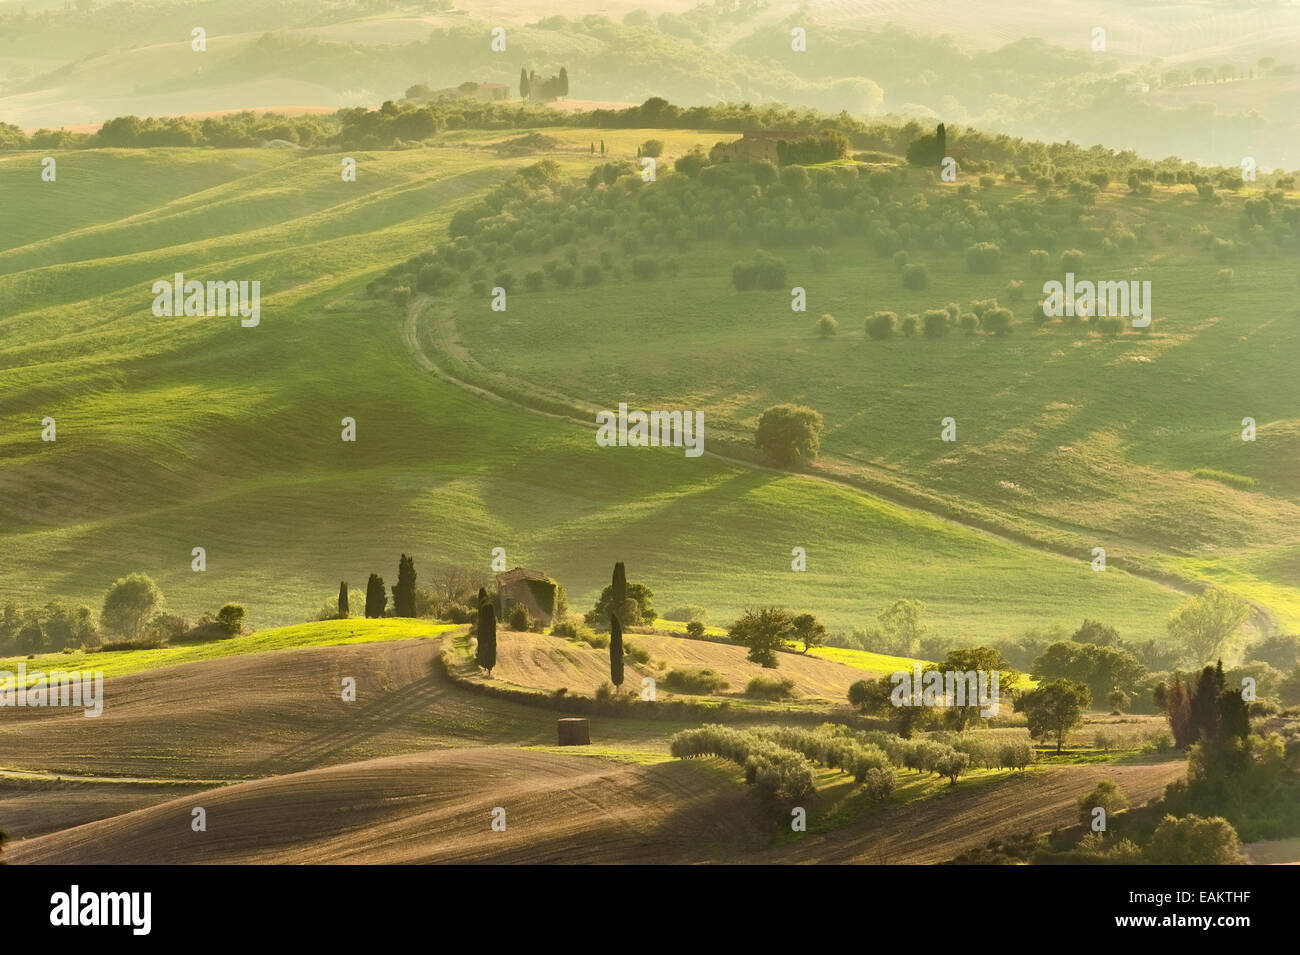 Vue sur la campagne dans le paysage de la Toscane, Italie Banque D'Images